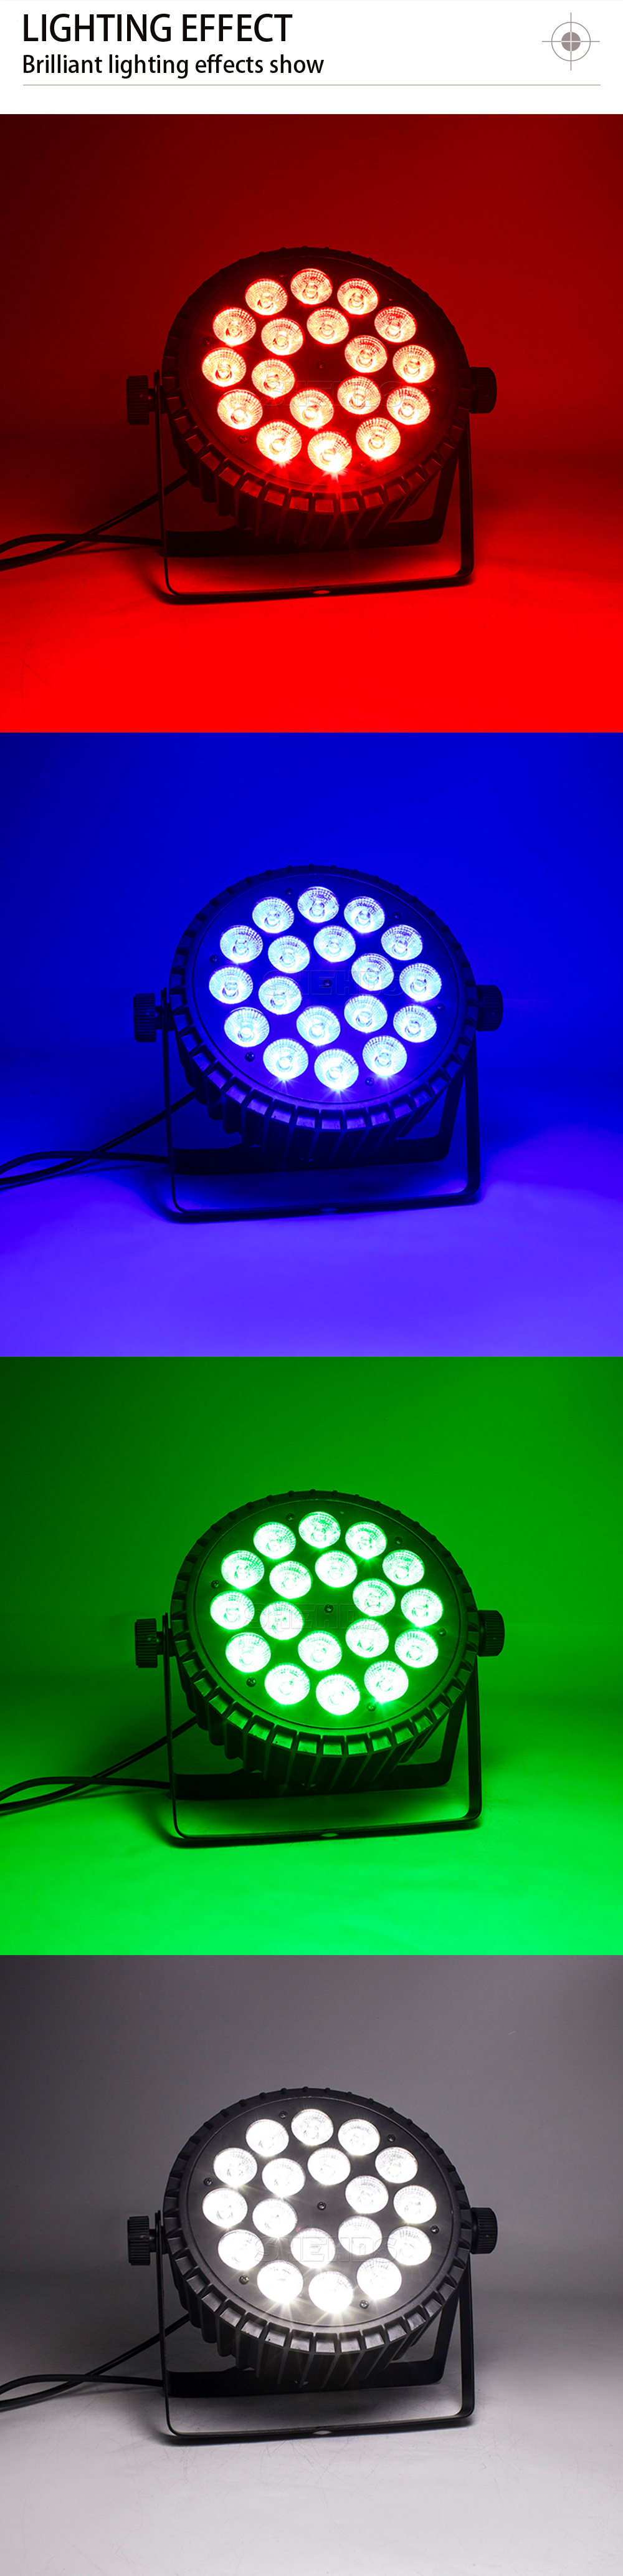 LED Par Lights,18x12w LED RGBW 4IN1 Par Led Light for Stage Lighting, Led  Wash Light DMX Uplights DJ Par Can Lights with Sound Activated Party Lights